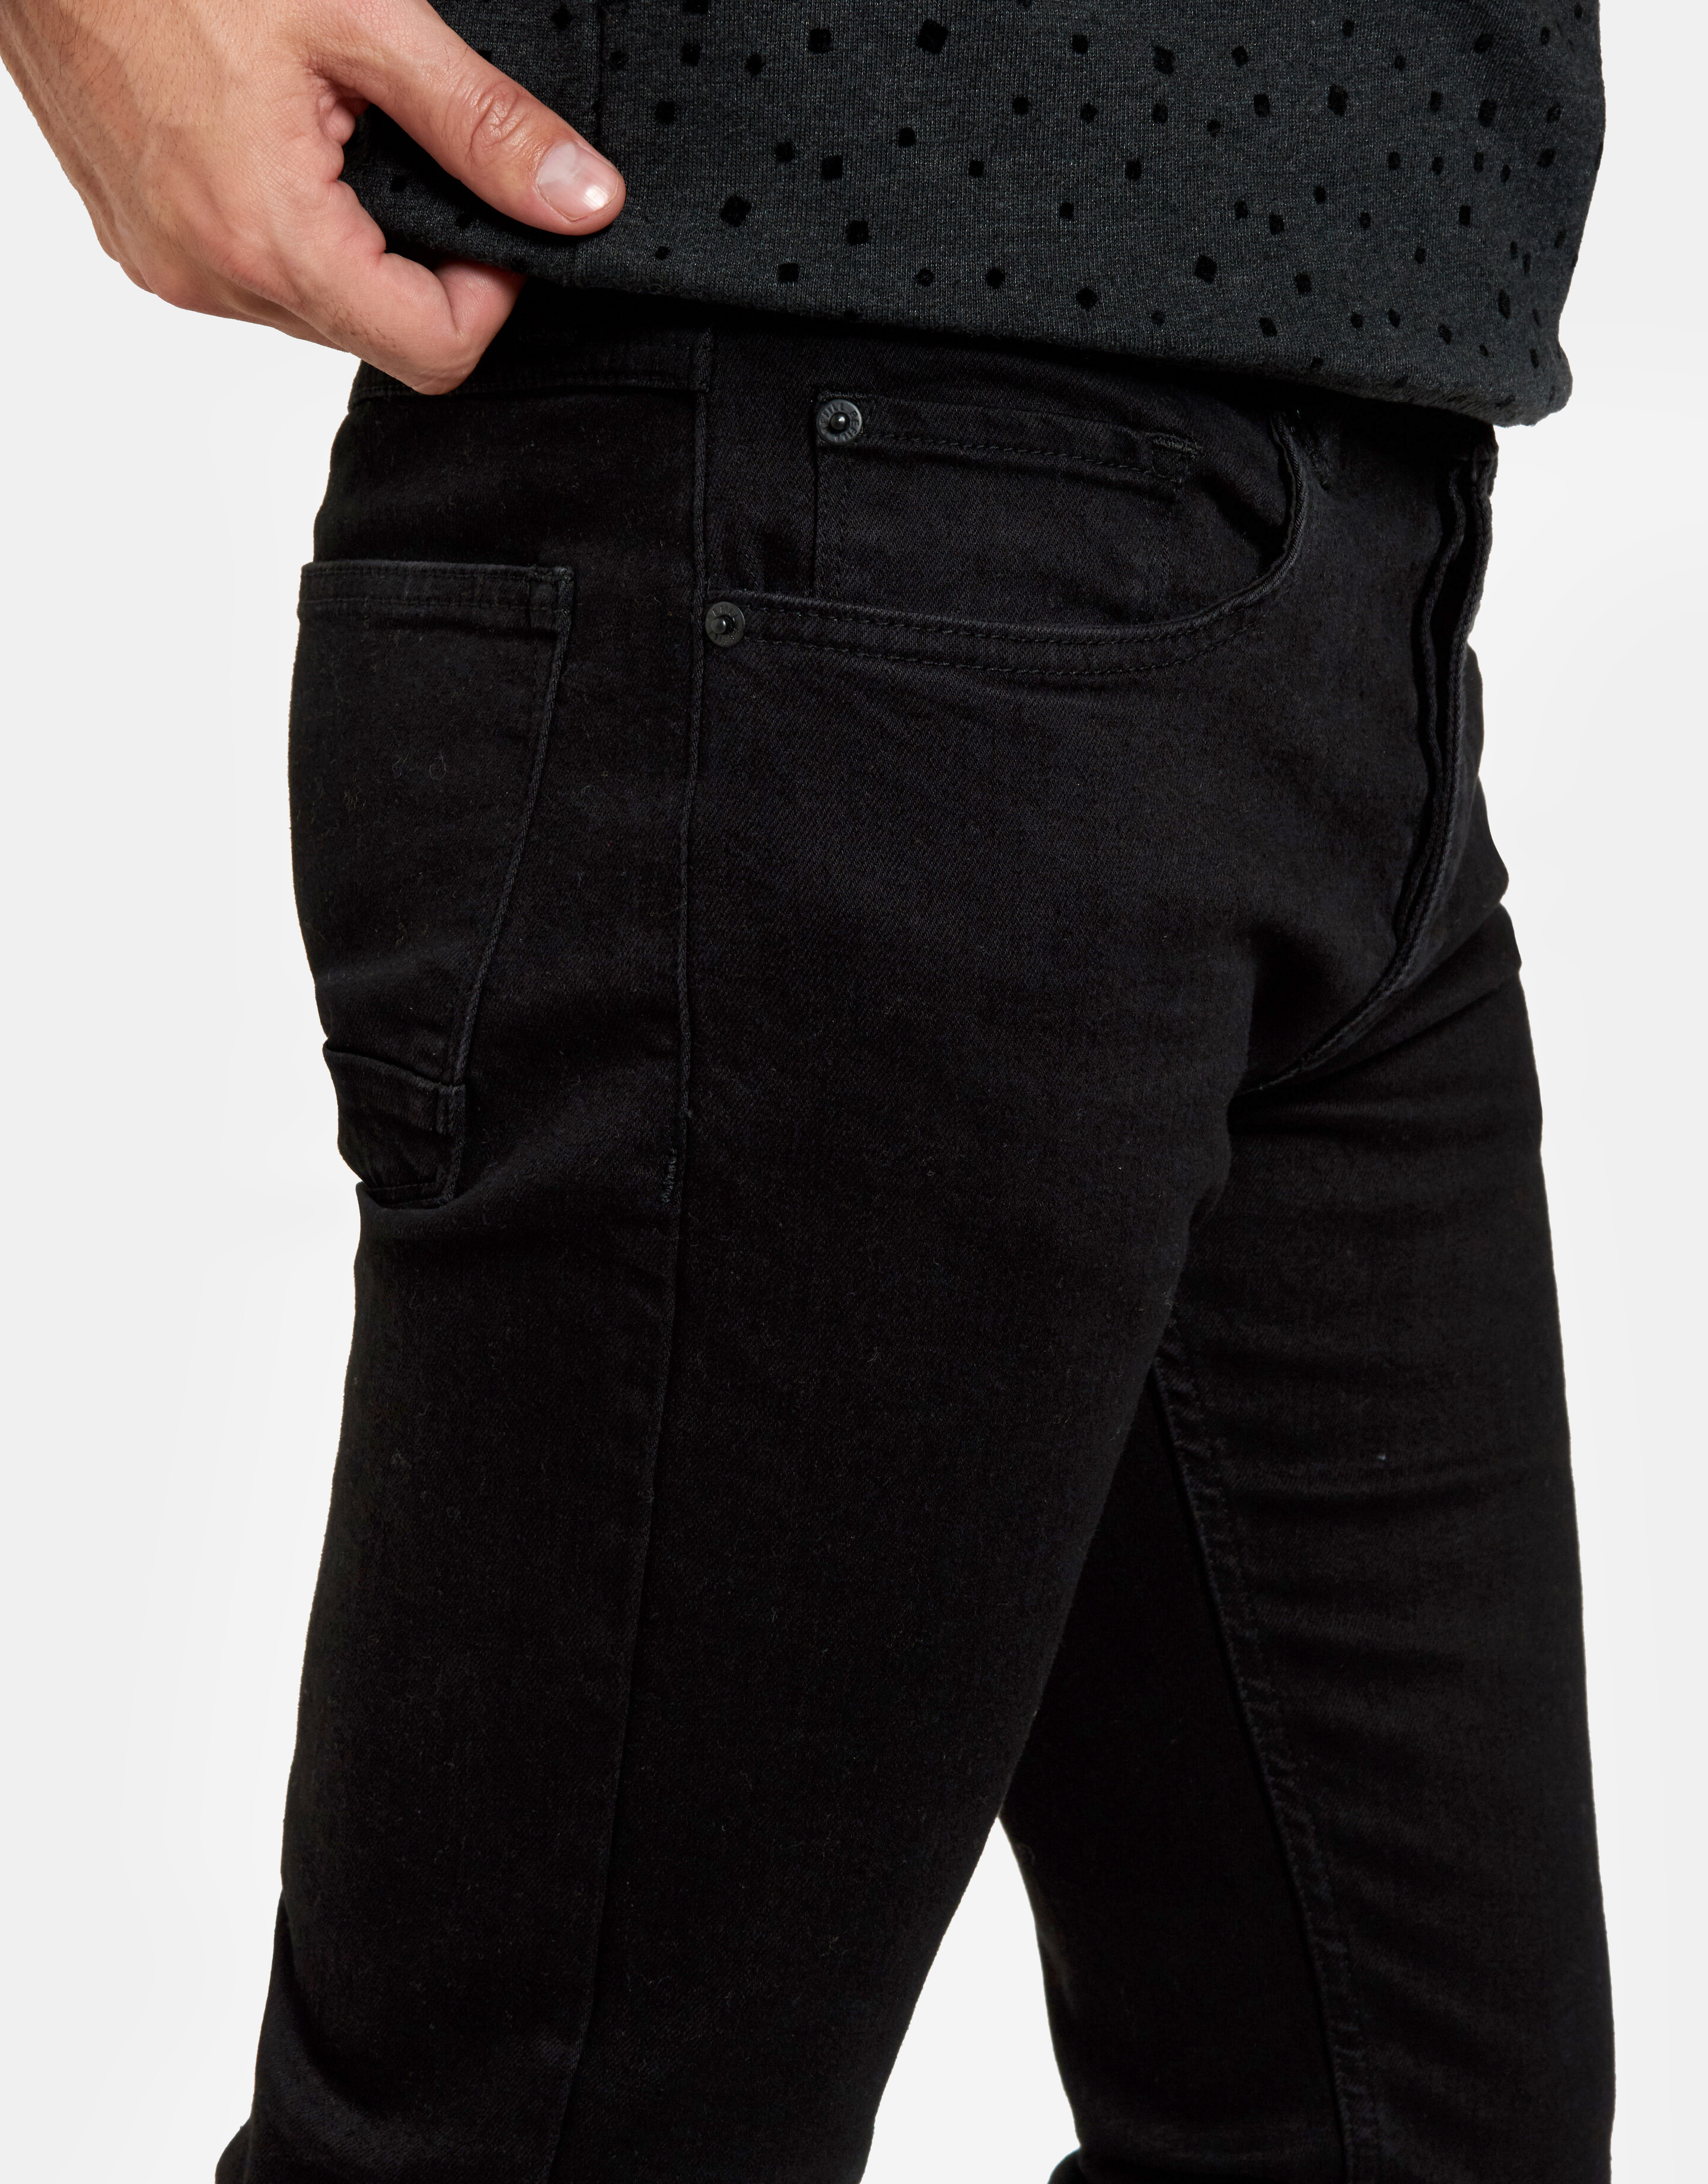 Lucas Slim Black Jeans L34 REFILL AUTHENTIC